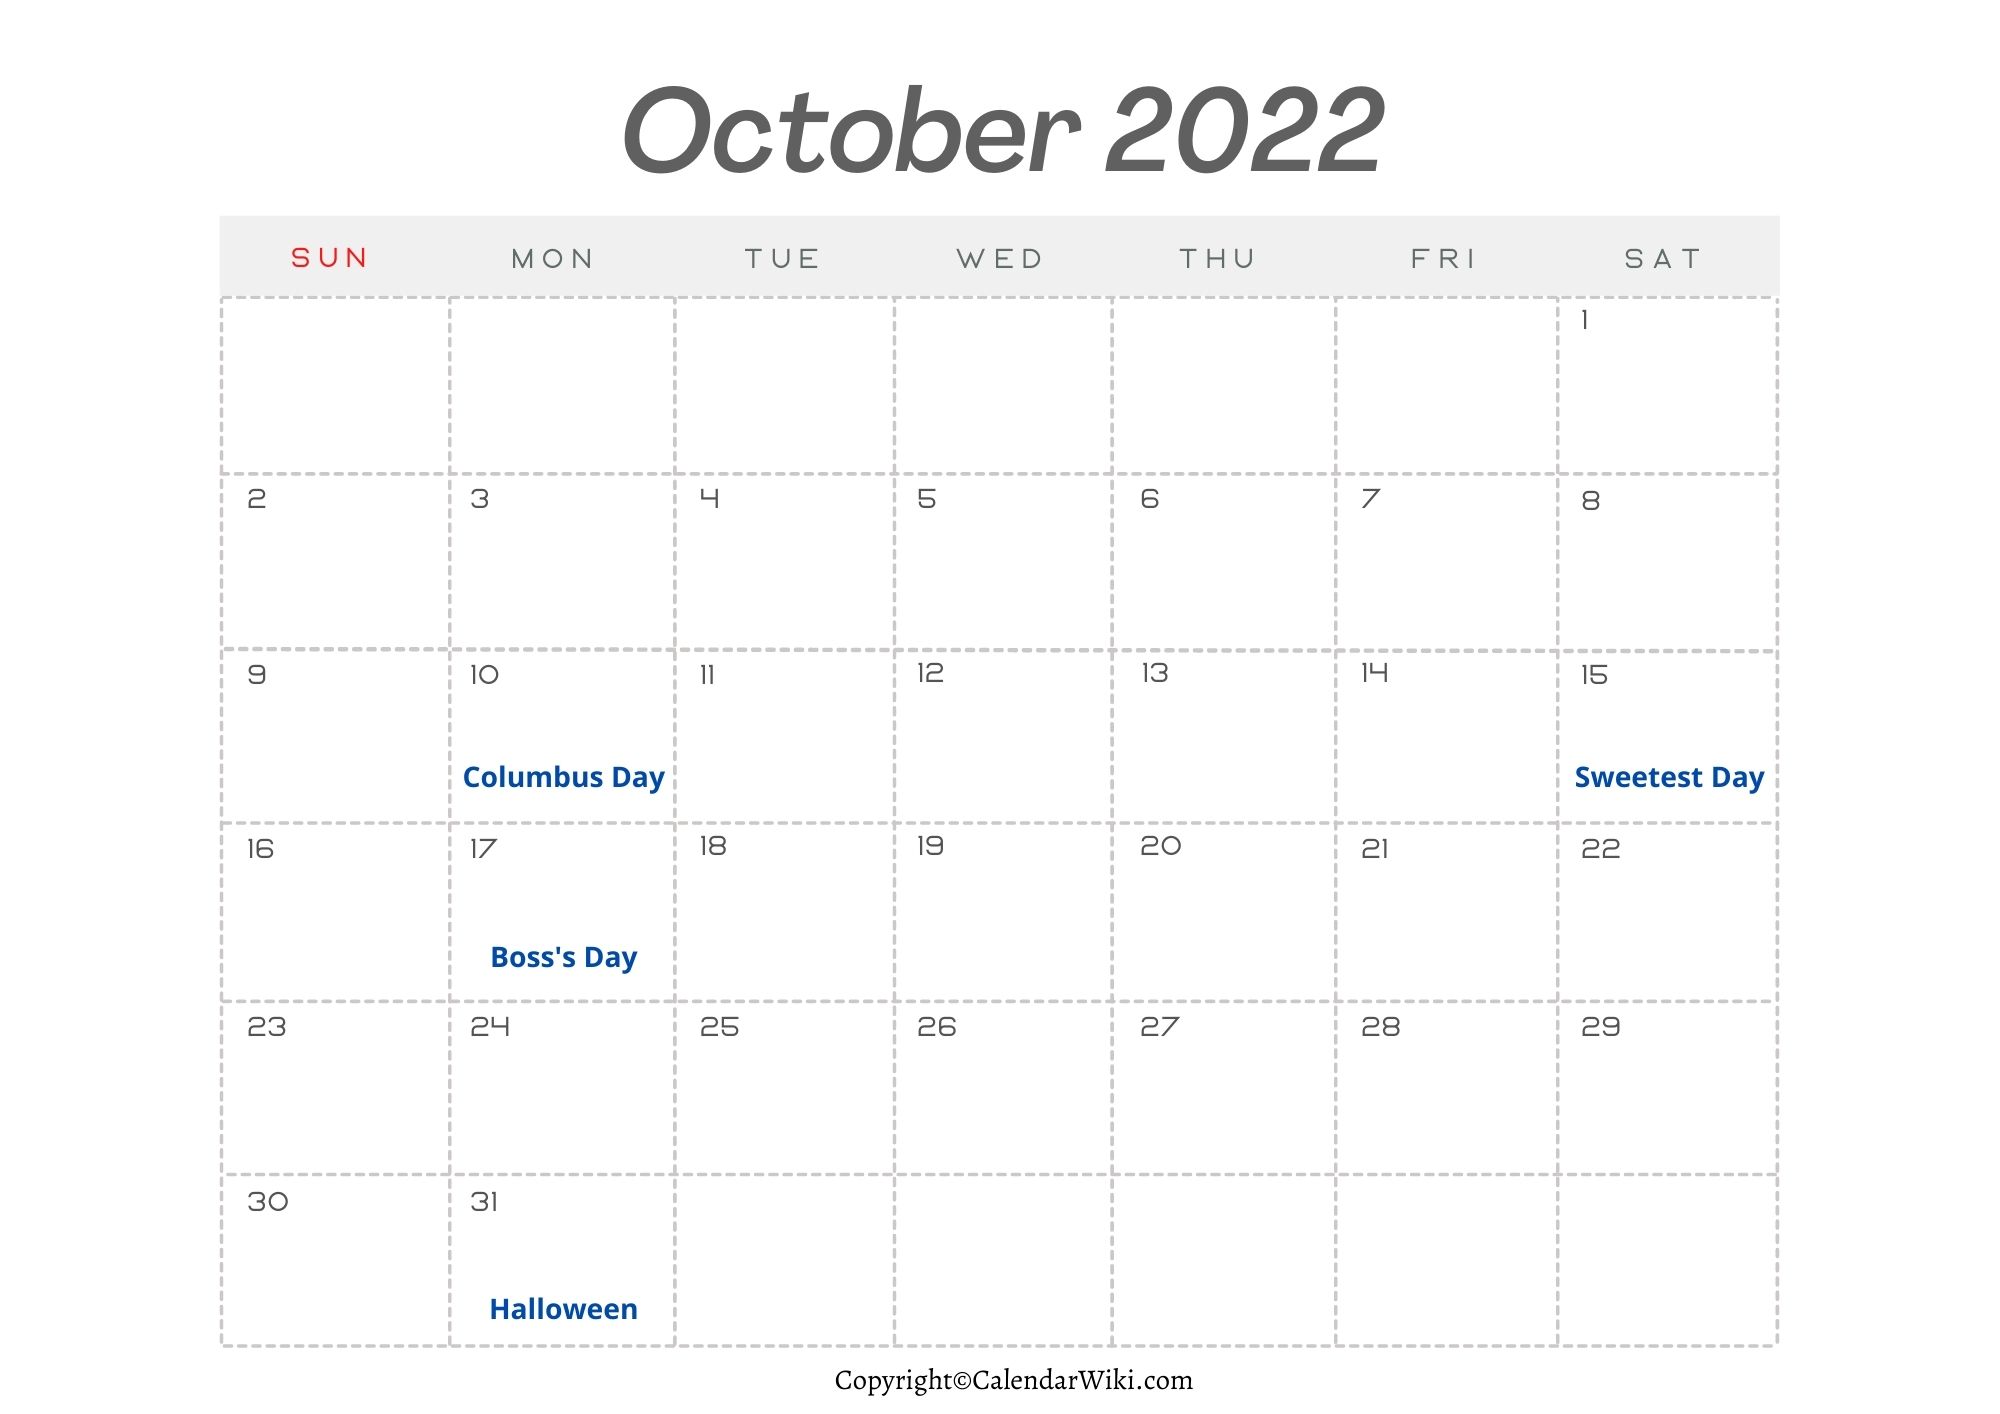 October Holidays 2022